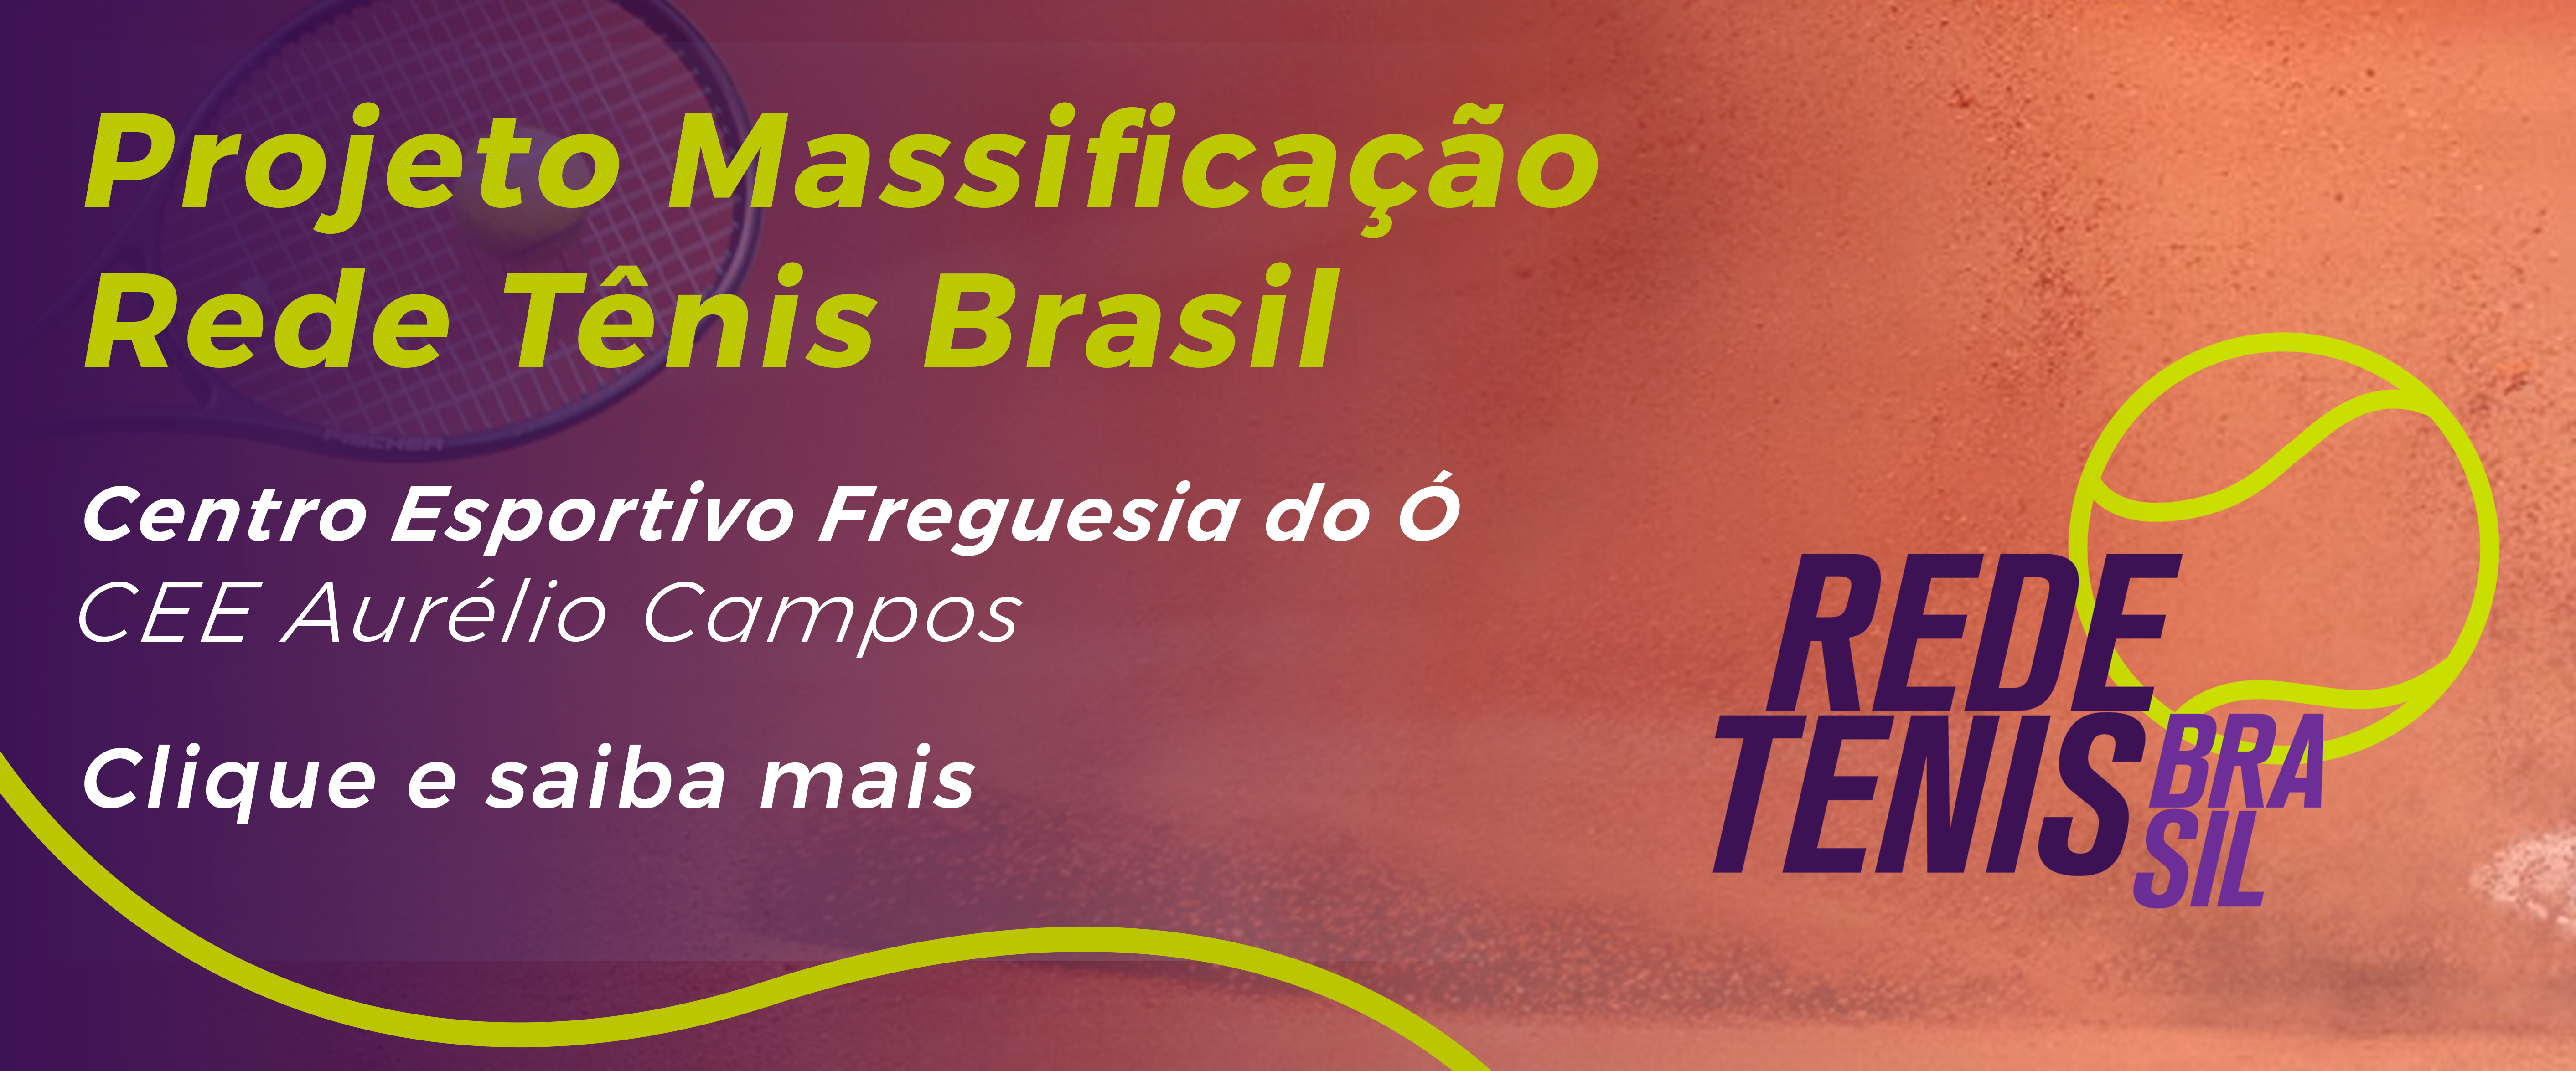 Arte divulgando o Projeto Massificação Rede Tênis Brasil.